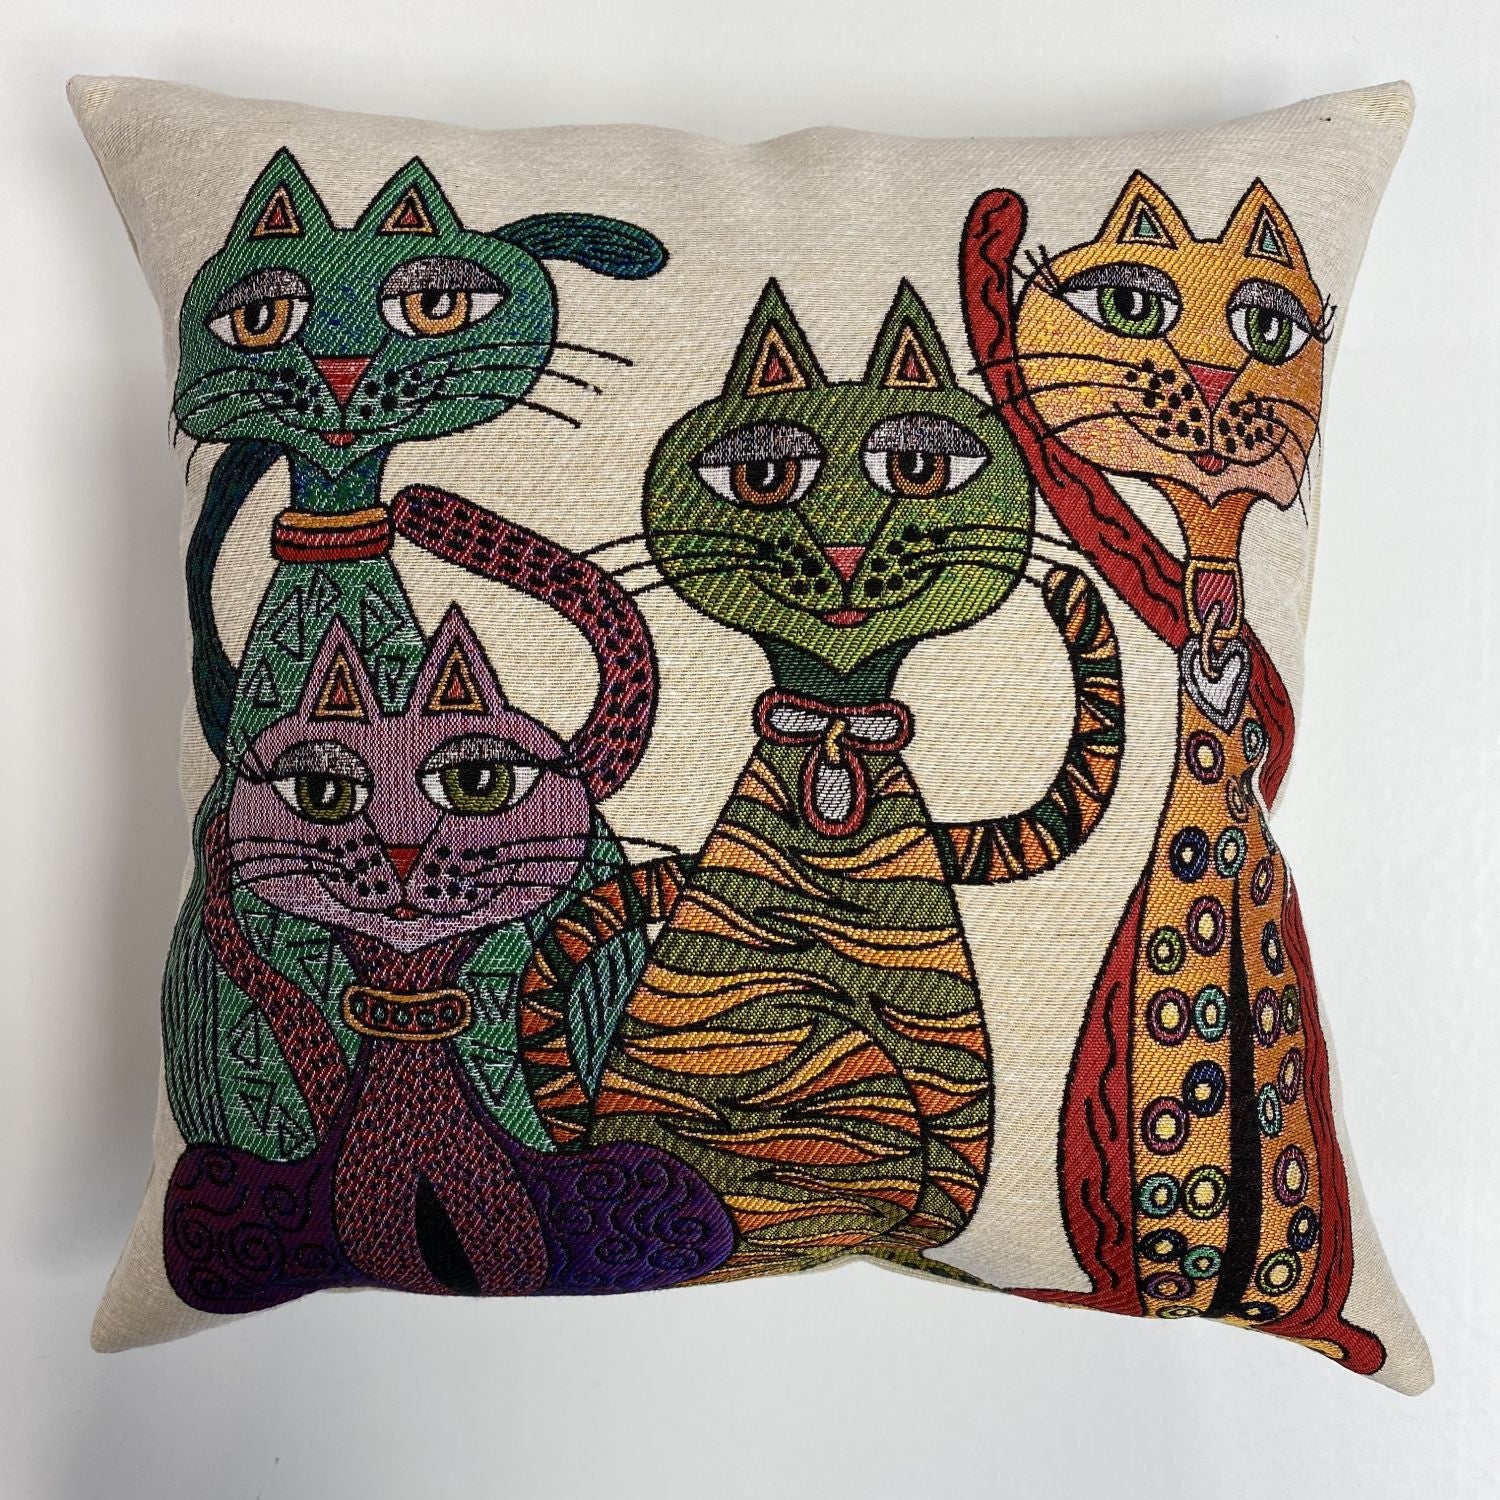 Cat Pillow 45x45cm - Pillow Cover - Cat Lover Gift - Cat Owner Gift - Cat Lover Gift Women - Cat Gifts for Cat Lovers - Fun Pillow